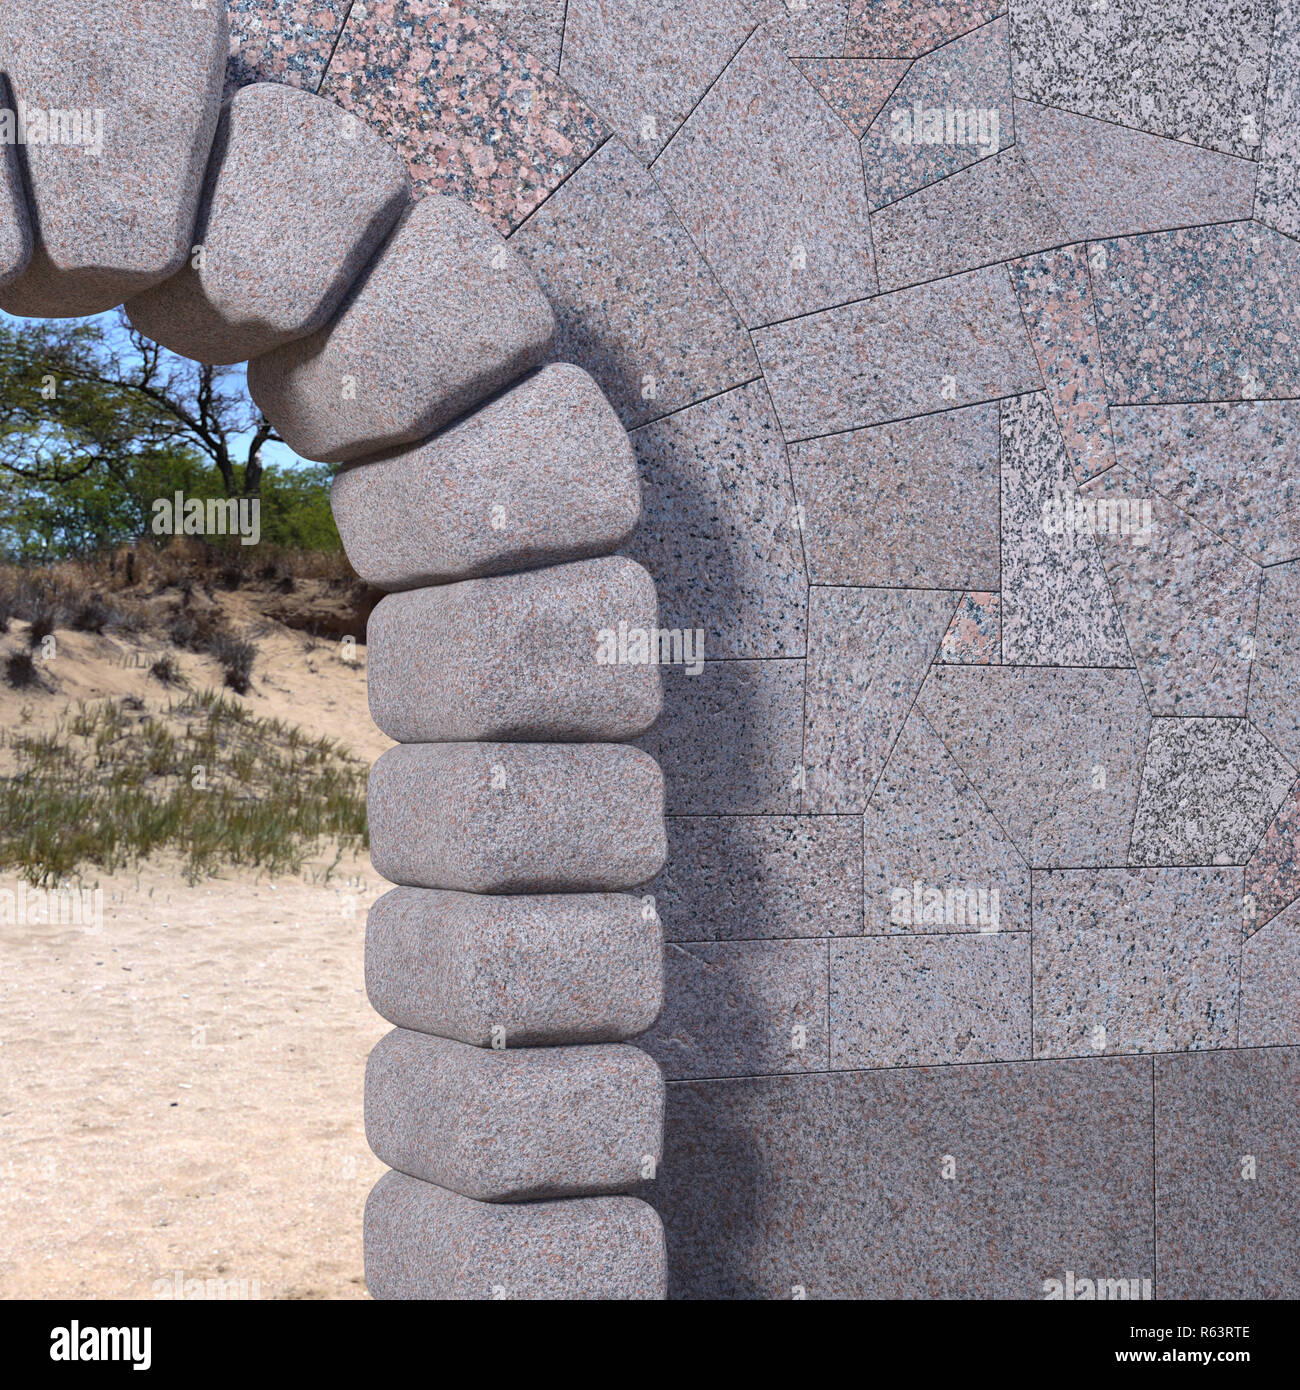 La partie supérieure droite d'une porte de pierre cyclopéens avec mur carrelé de granit, de sable et d'arbres vue par l'ouverture. 3D render. Banque D'Images